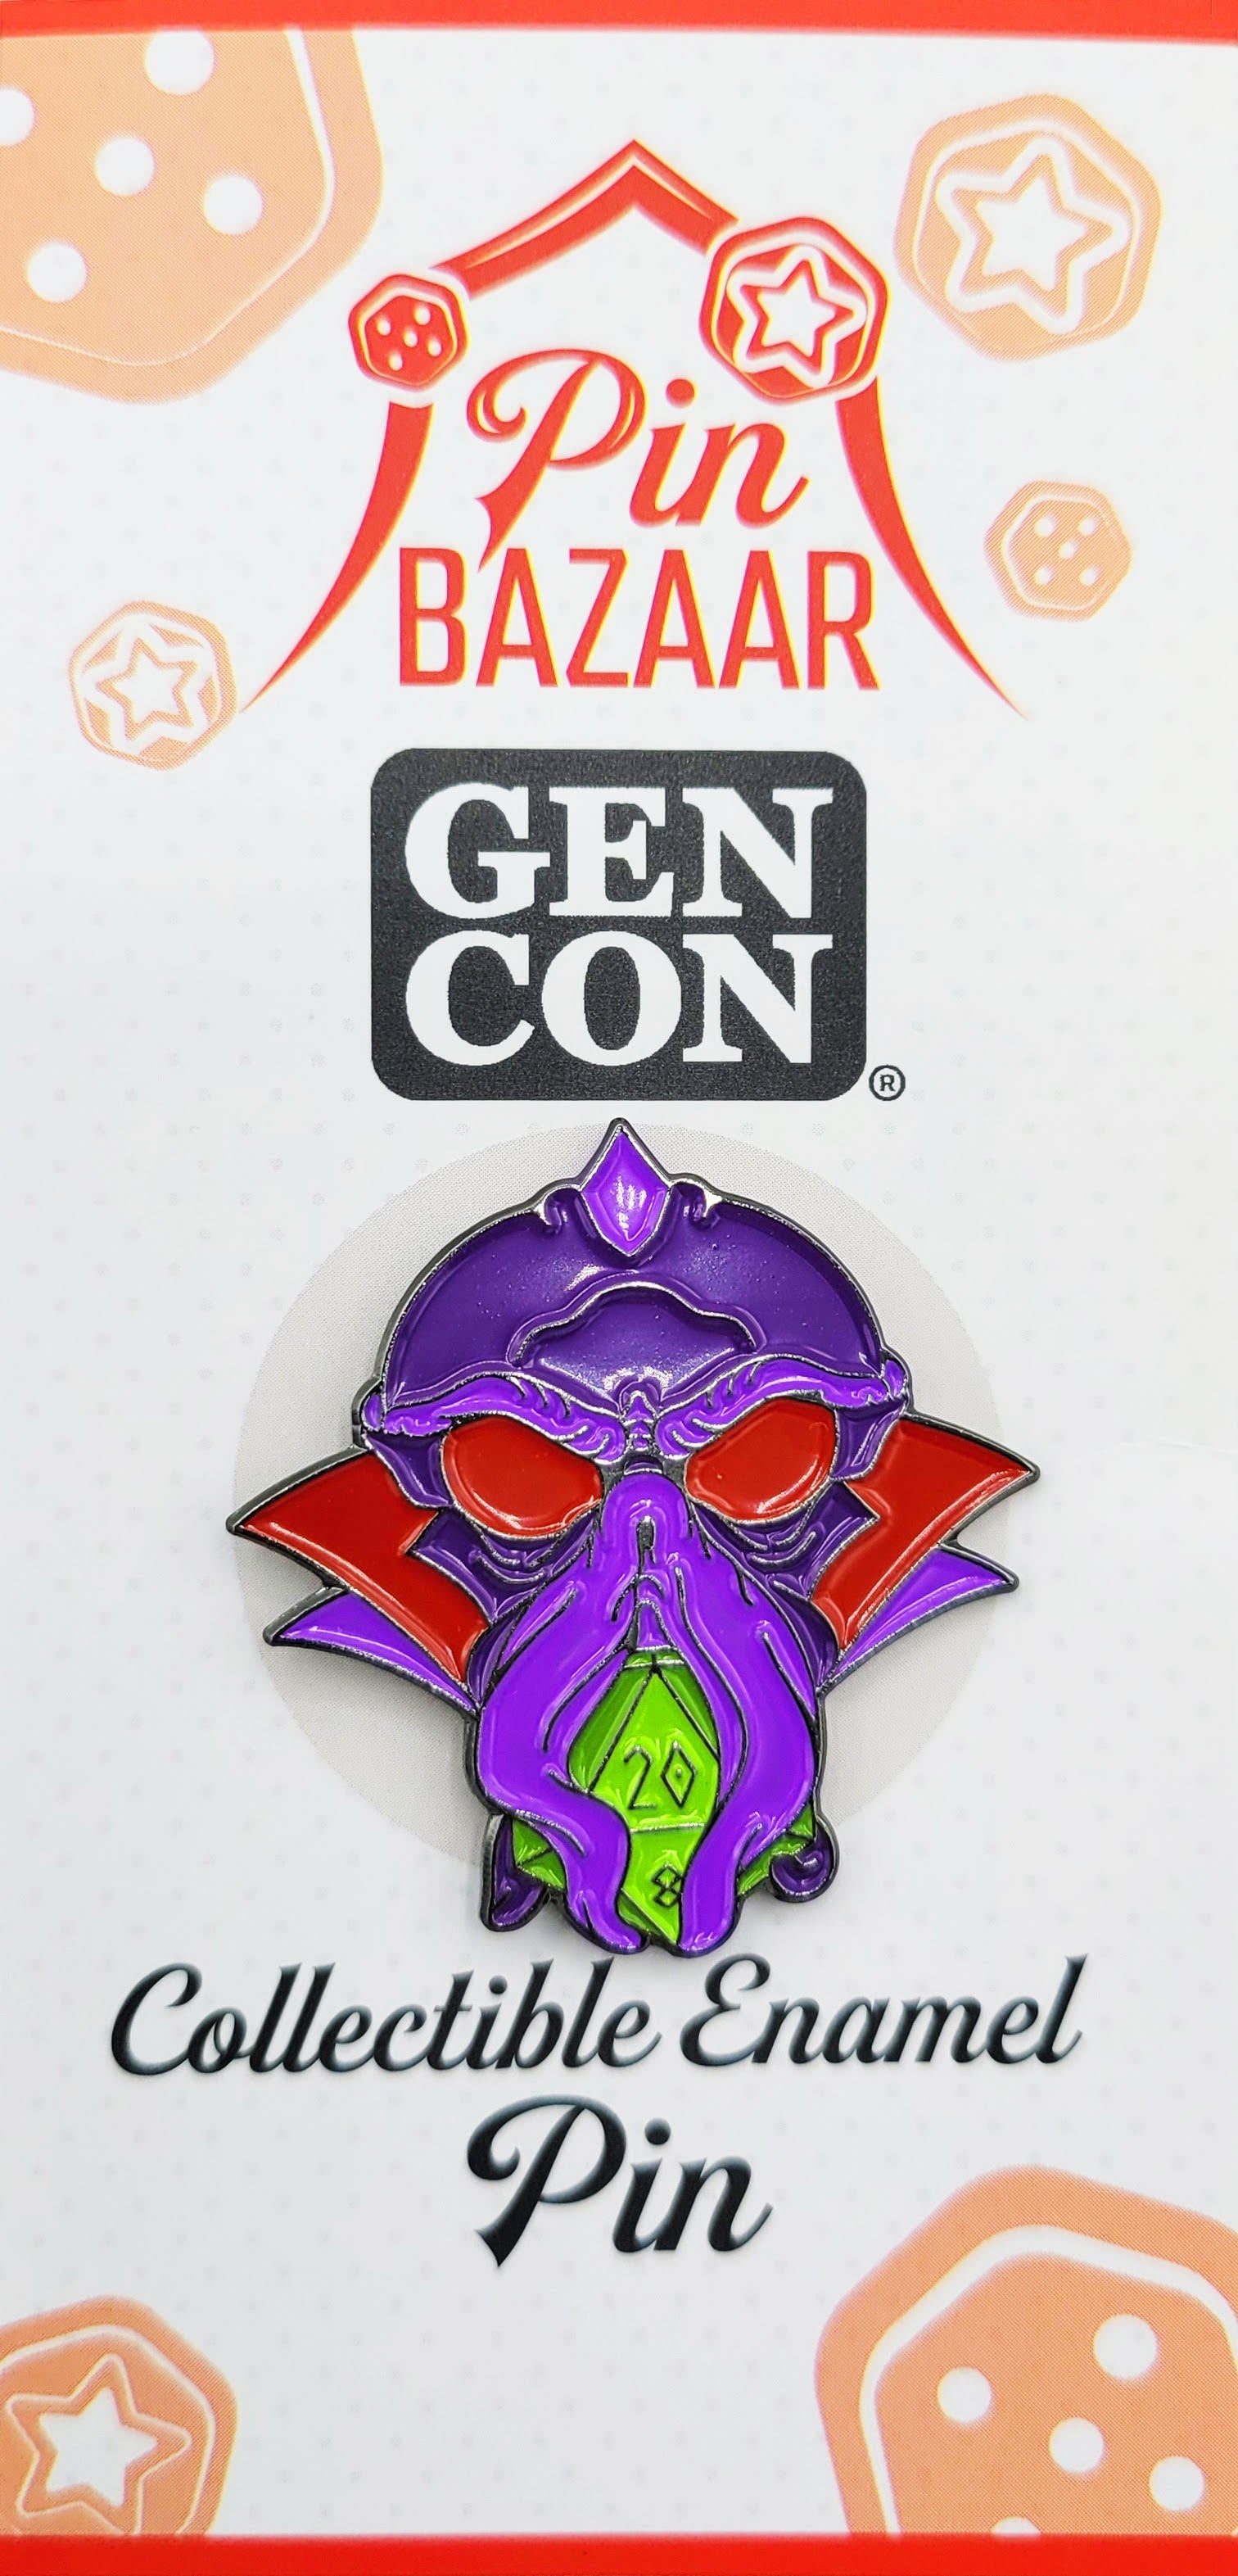 GenCon Pin Bazaar Octopus D20 Limited Edition - NOR 03665